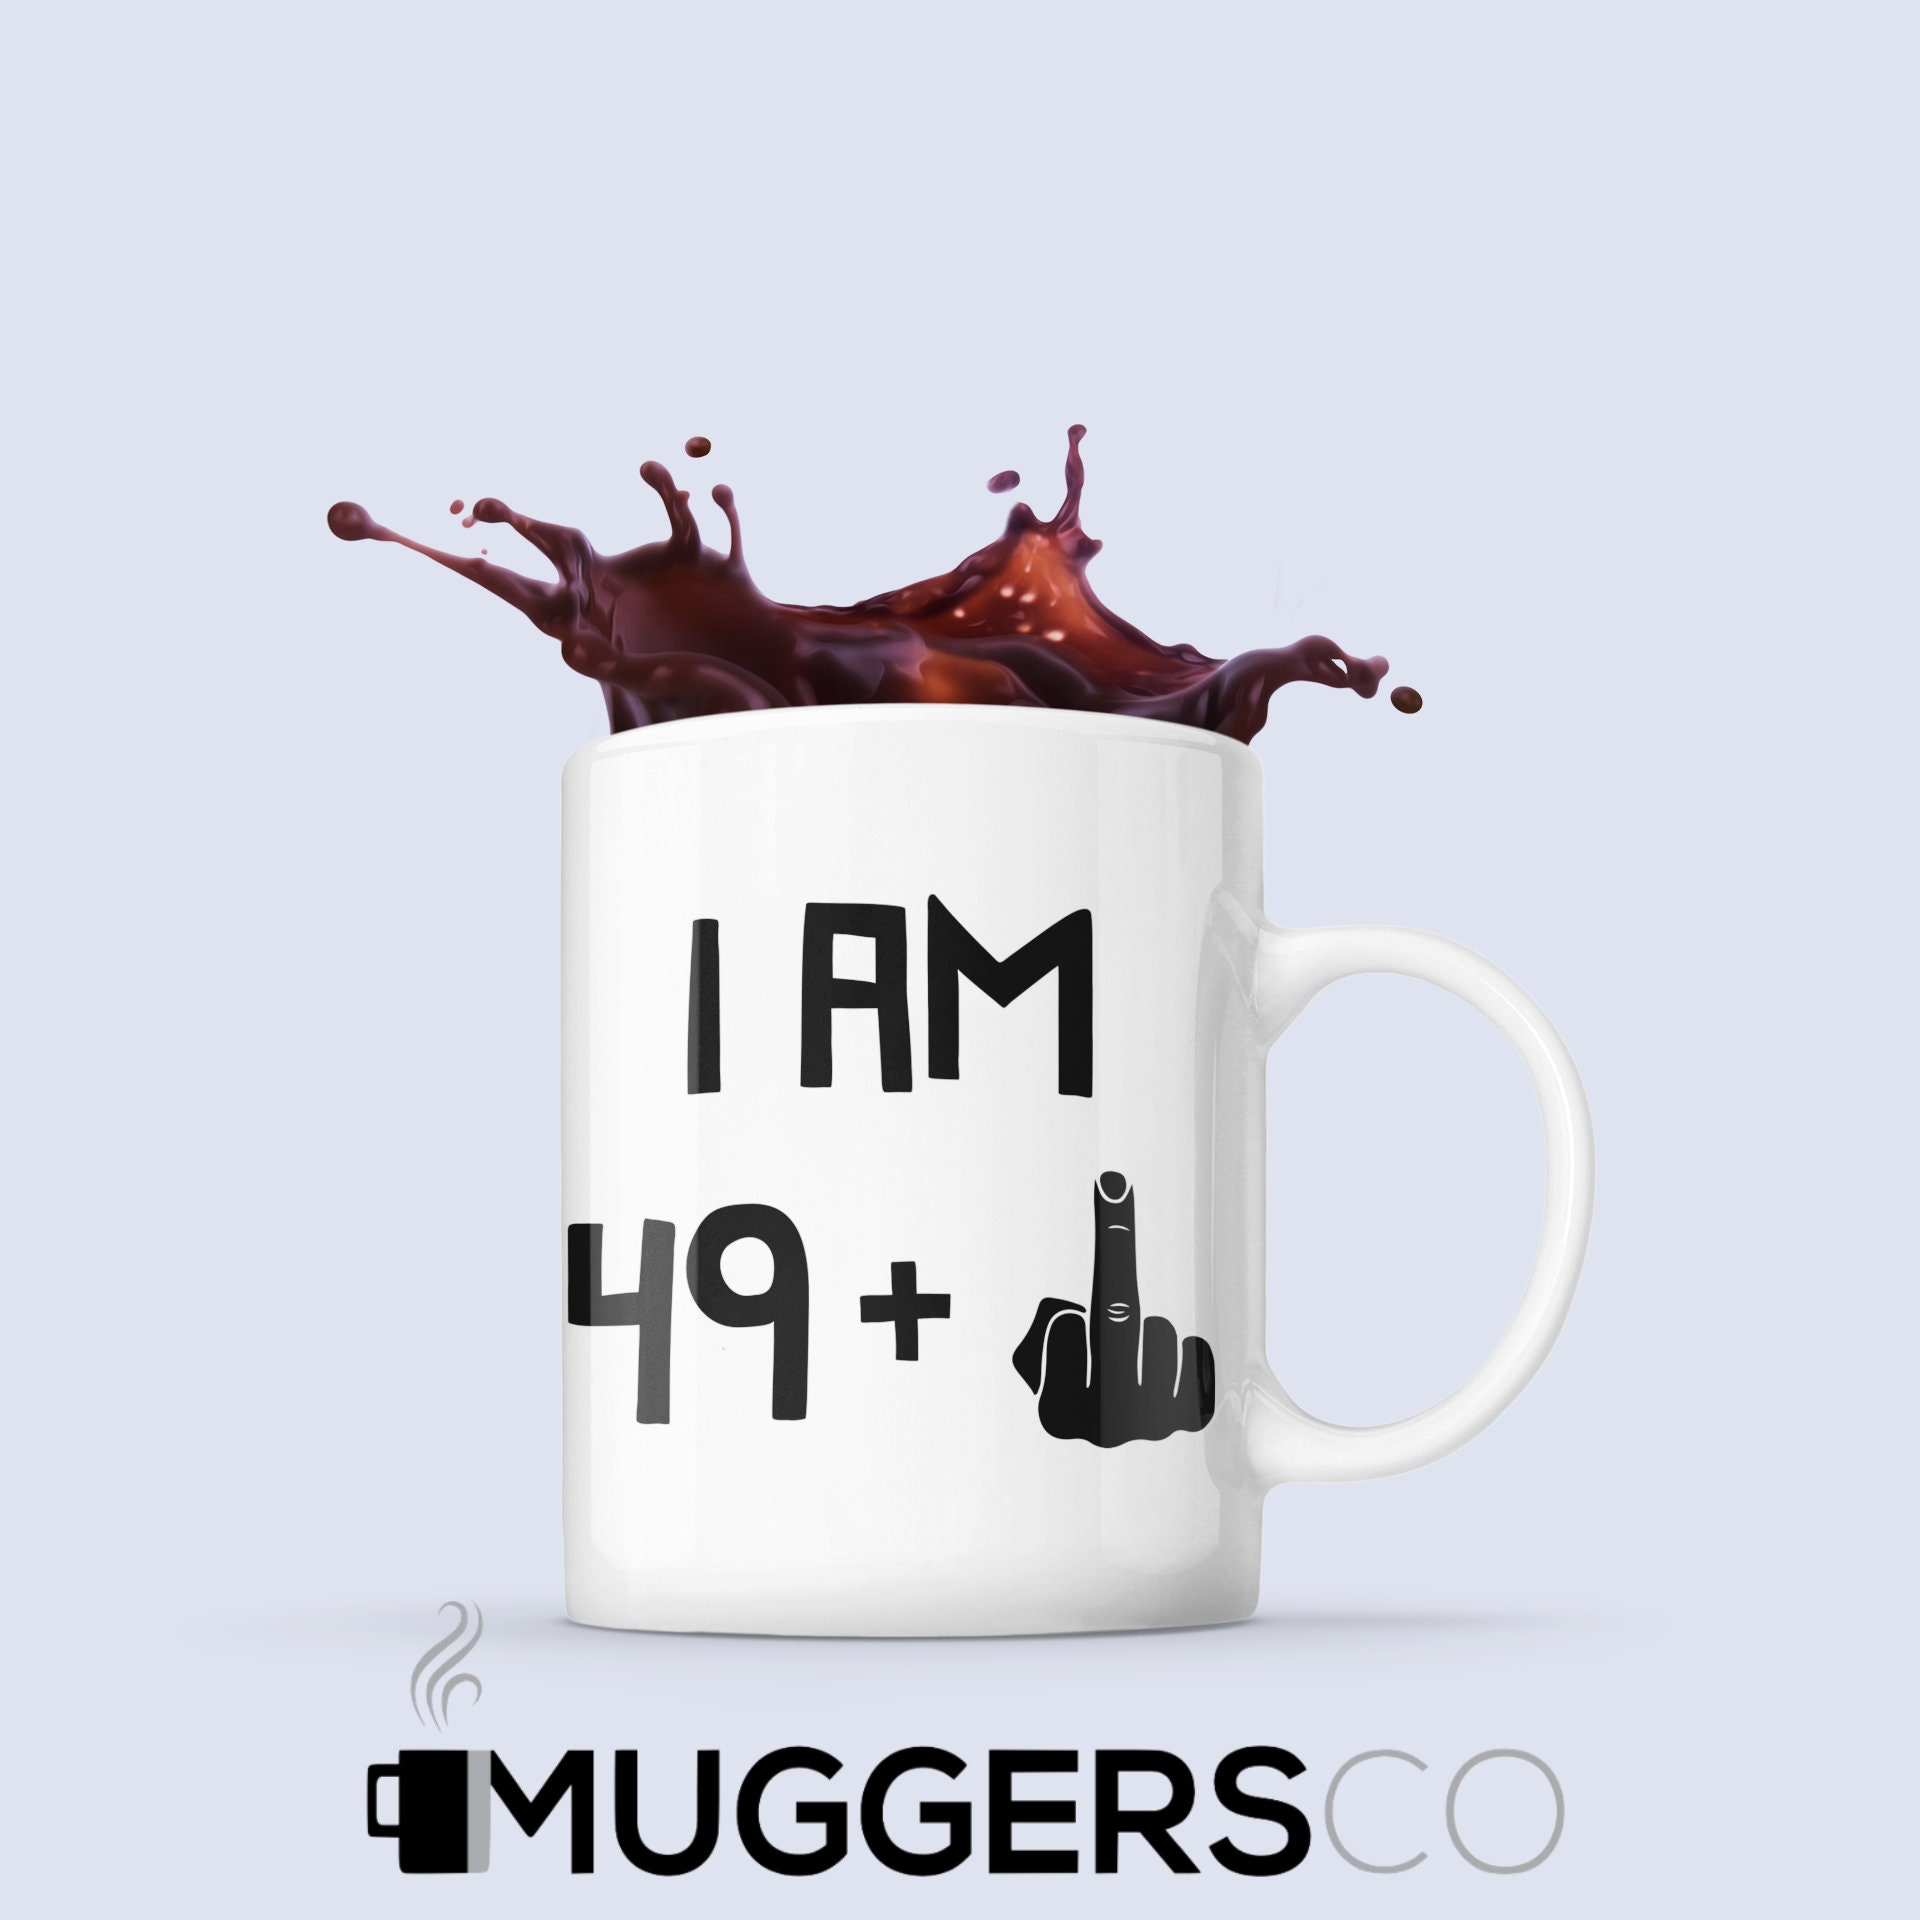 50th Birthday Gifts - I Am 49 + Middle Finger Funny Coffee Mug - Gag G -  RANSALEX